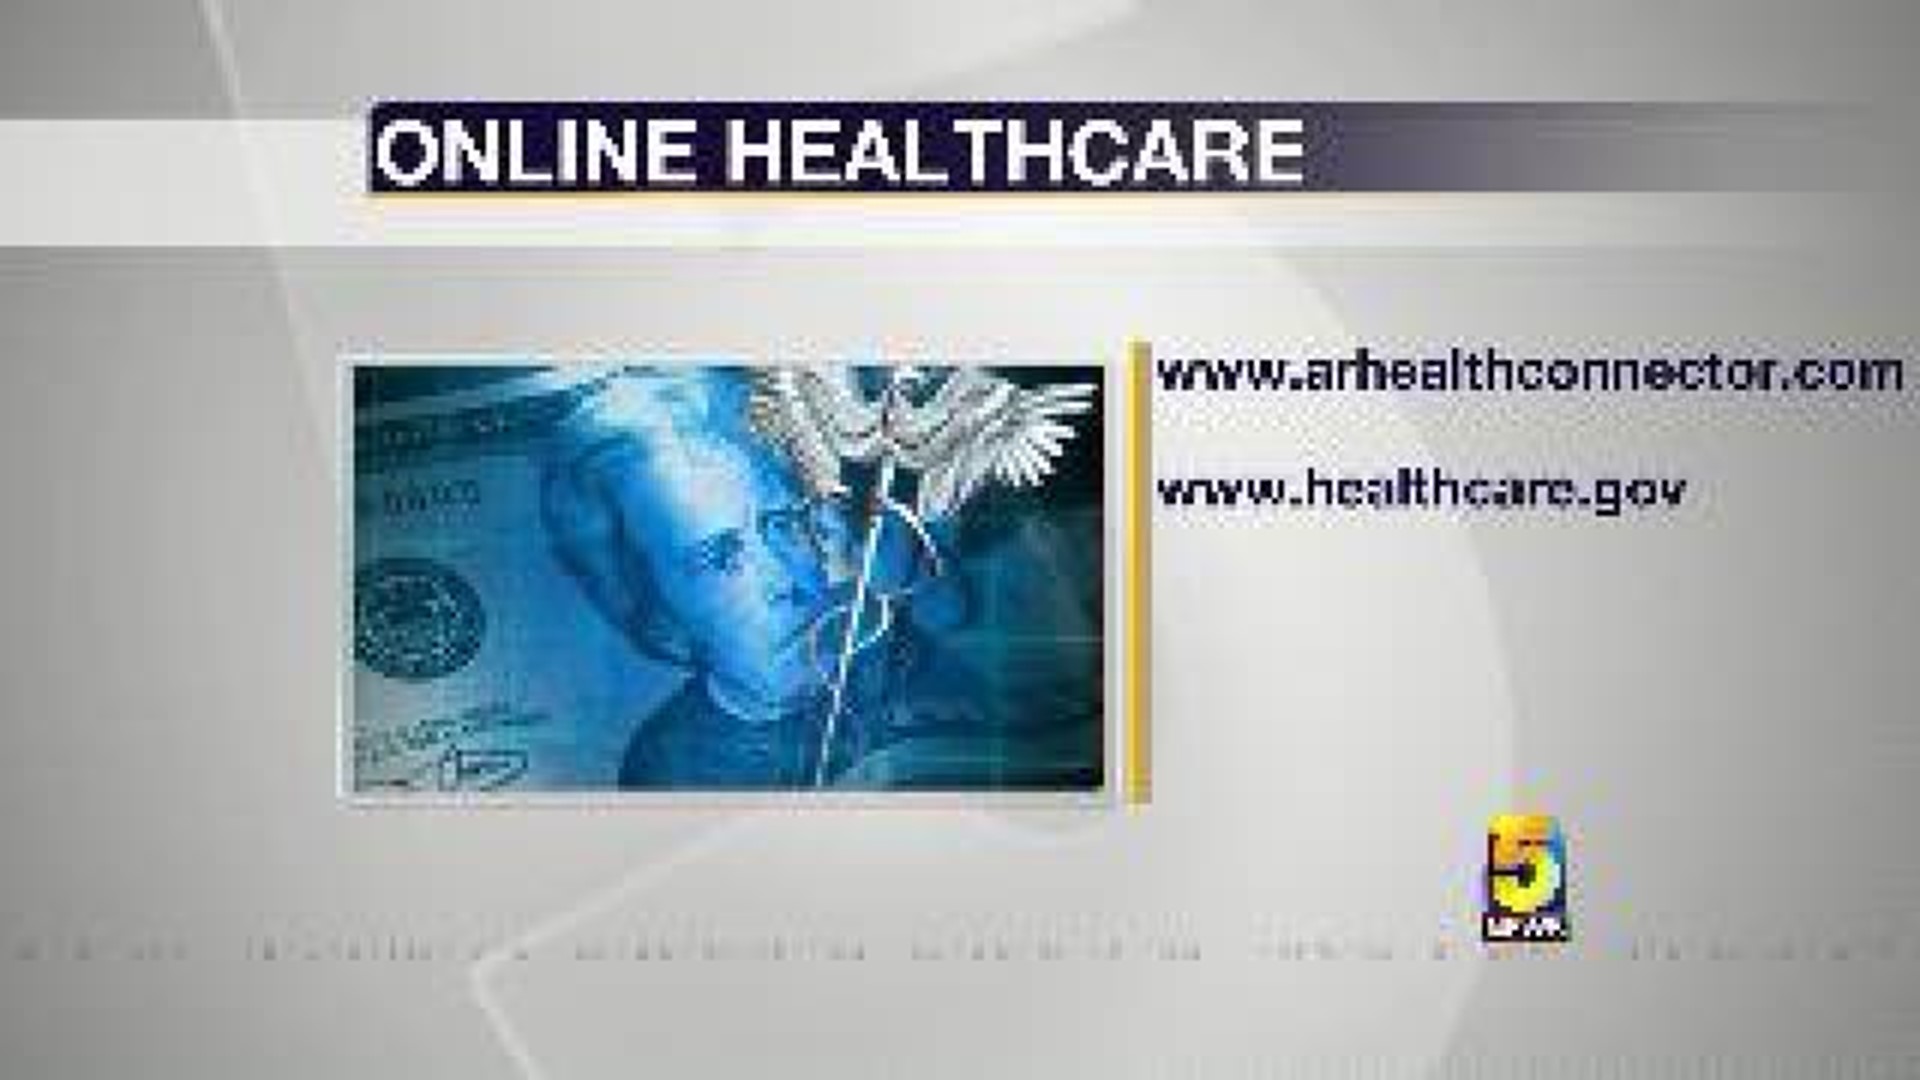 Online Health Care for Arkansas